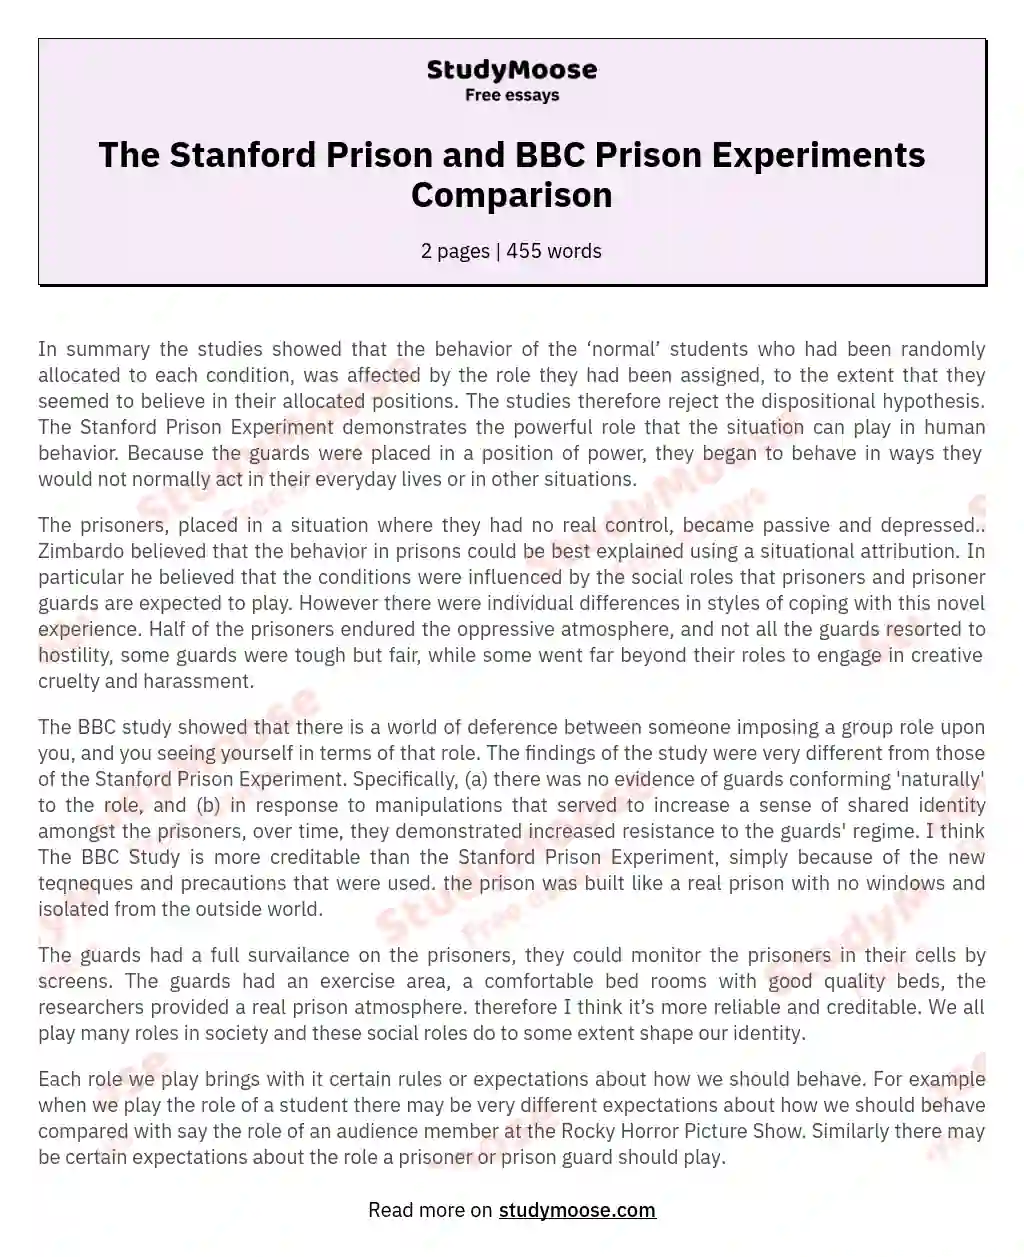 The Stanford Prison and BBC Prison Experiments Comparison